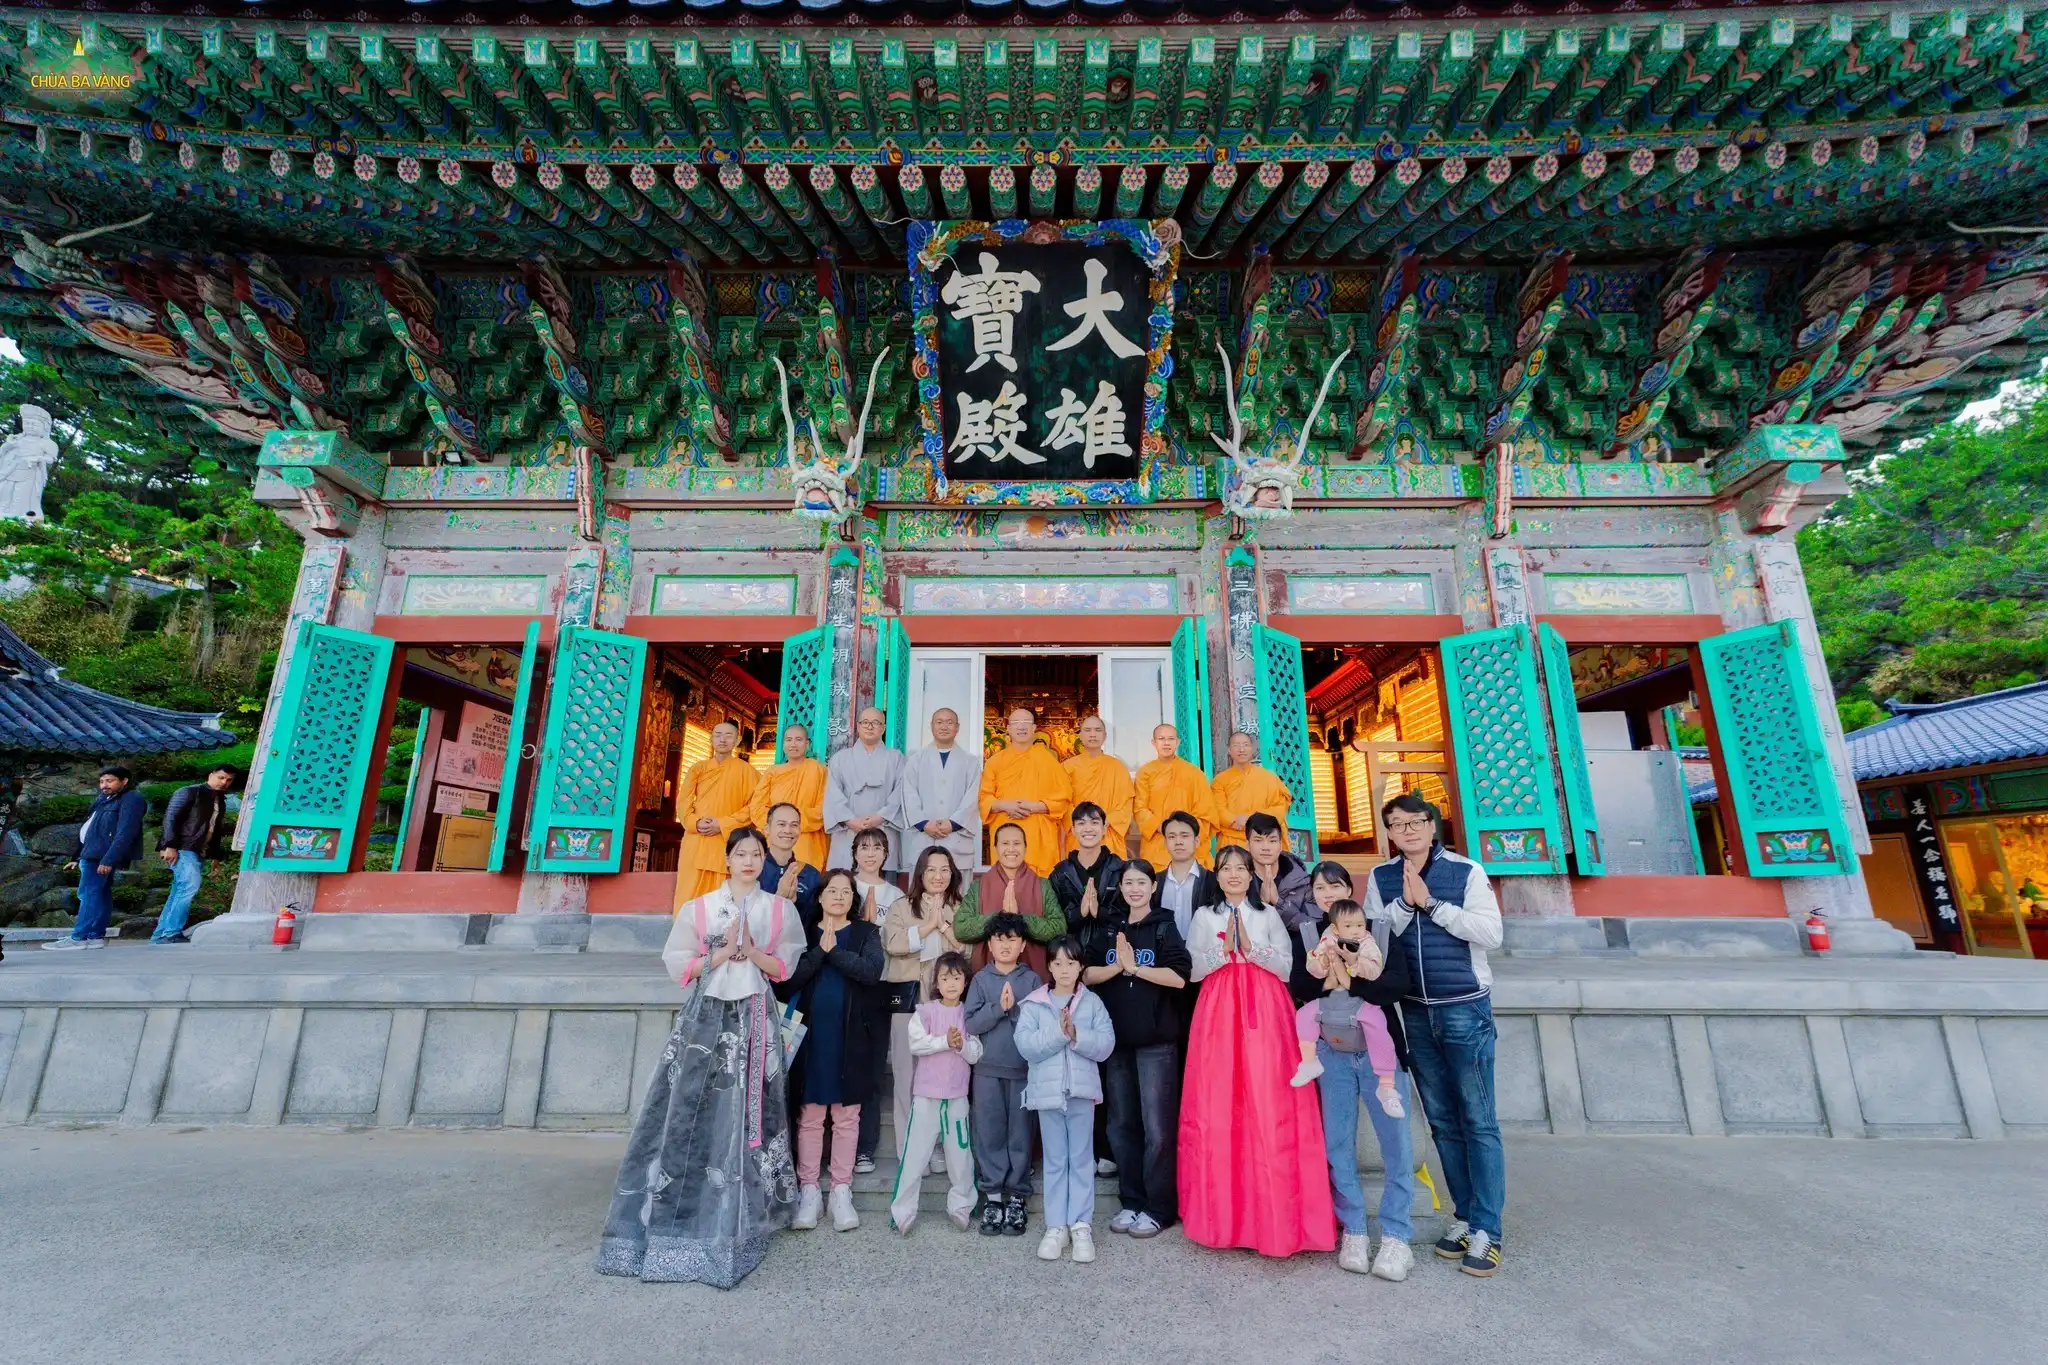 Trước buổi chia sẻ Pháp cho các Phật tử ở chùa Đông Hải Long Cung (Busan, Hàn Quốc), Sư Phụ cùng chư Tăng và các Phật tử đã vấn an quý Thầy ở chùa Đông Hải Long Cung